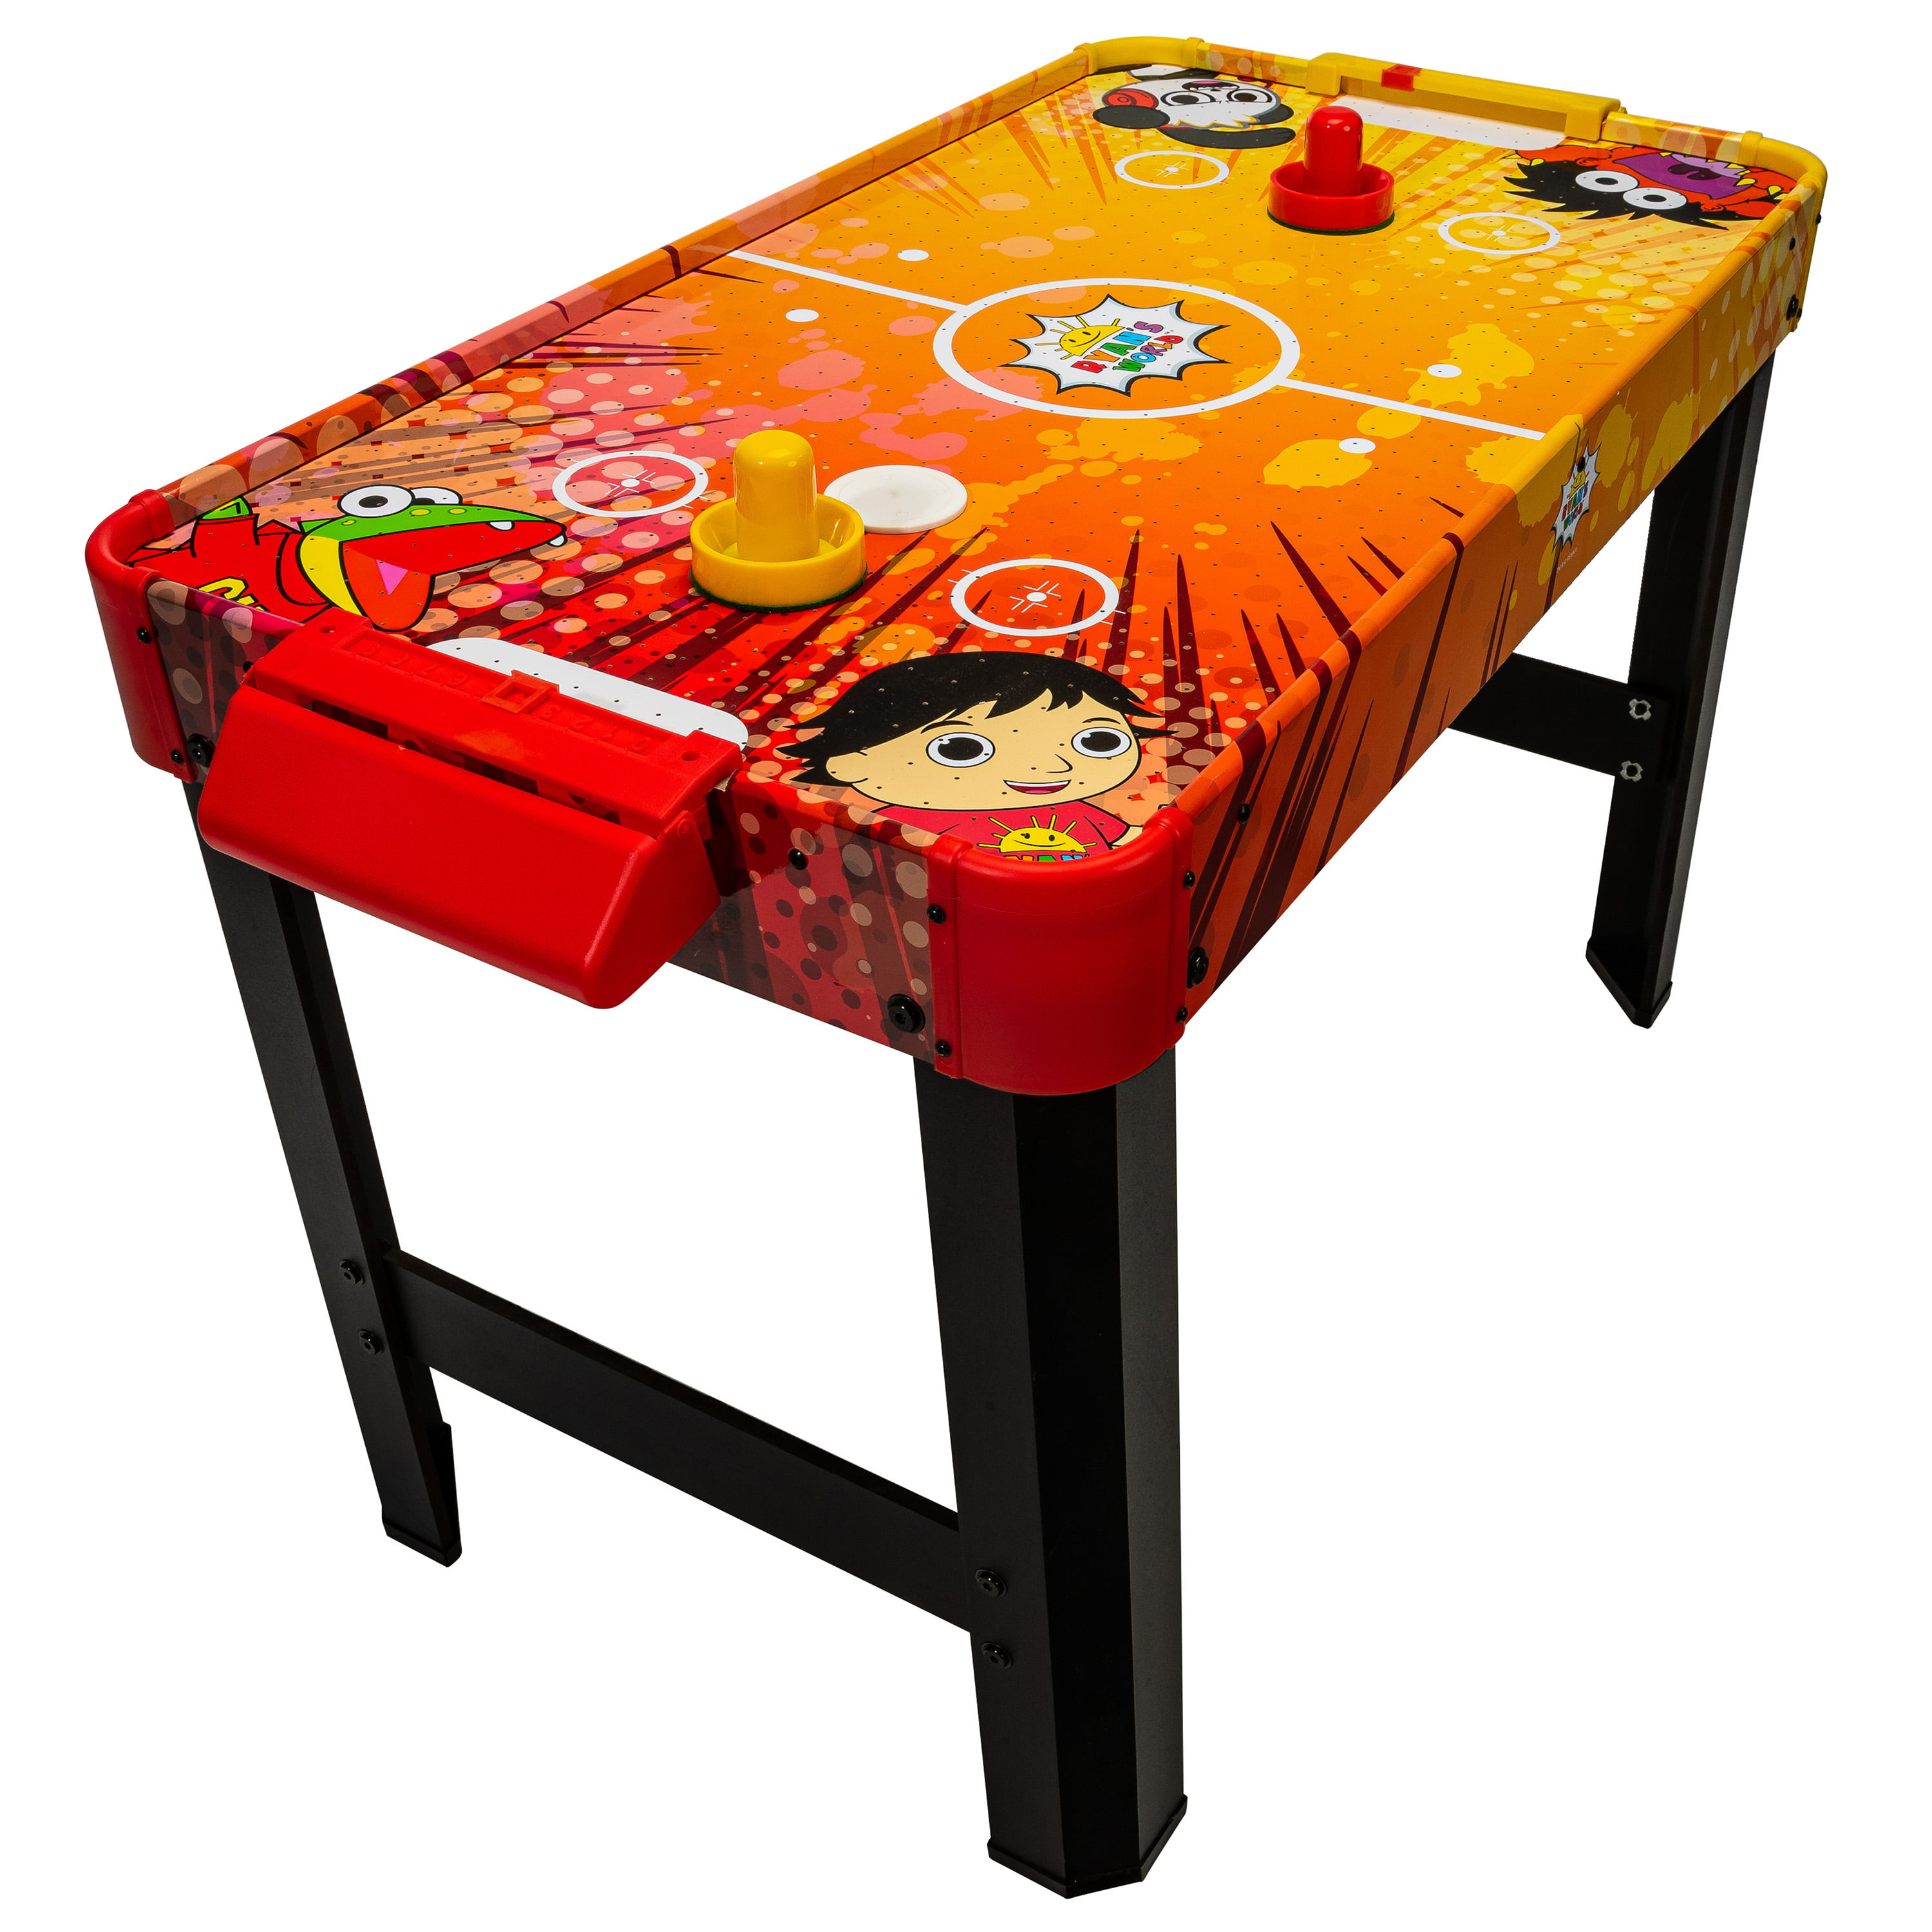 MD Sports 54 in environ 137.16 cm propulsé Air hockey table avec électronique Buteur électrique 12 V 